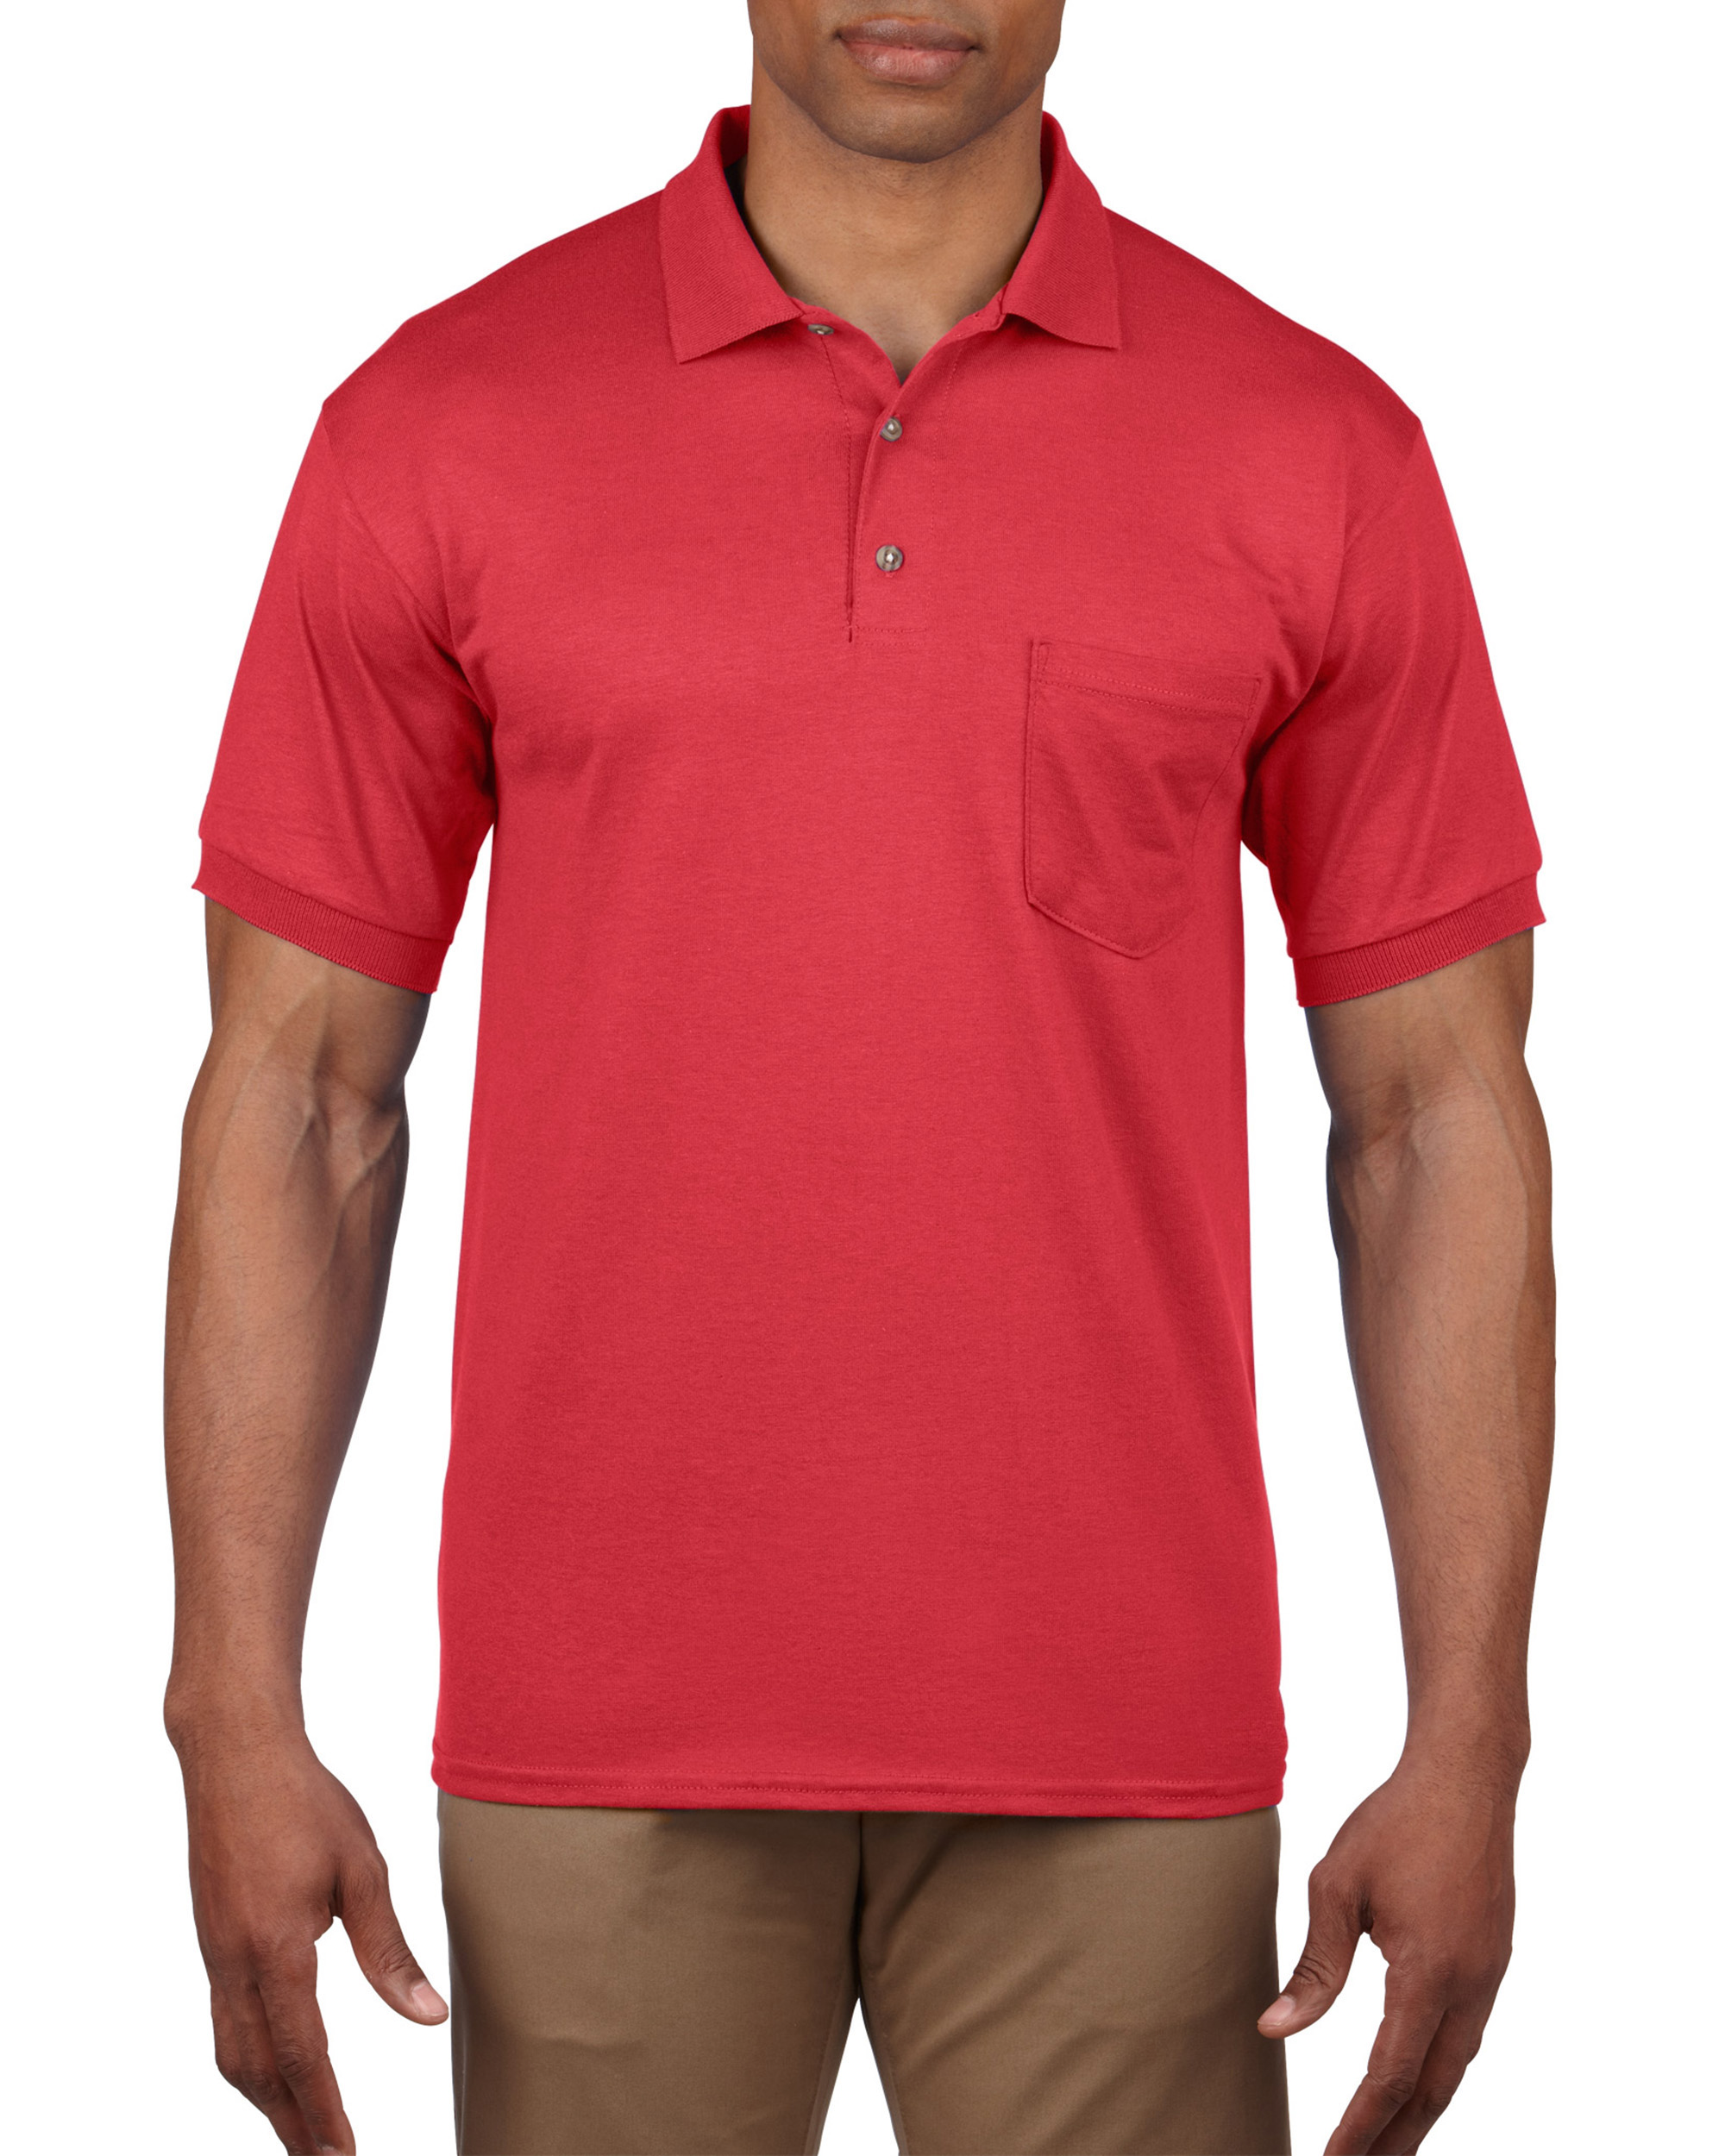 Gildan® 8900 DryBlend® Adult Jersey Sport Shirt with Pocket